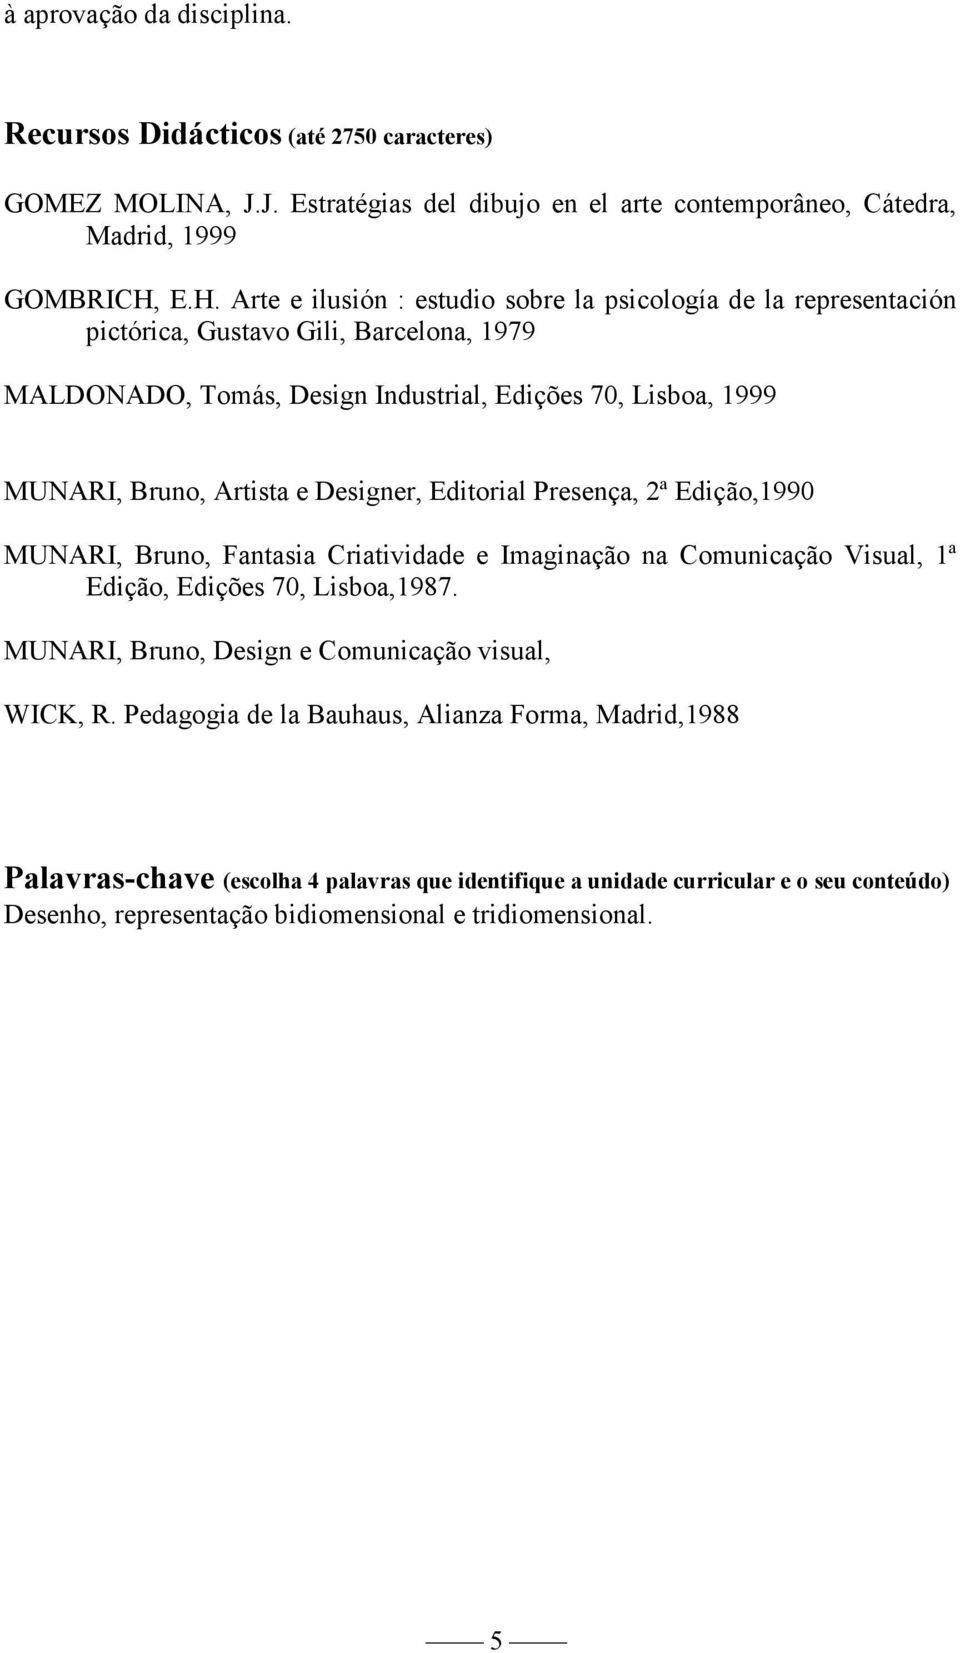 Designer, Editorial Presença, 2ª,1990 MUNARI, Bruno, Fantasia Criatividade e Imaginação na Comunicação Visual, 1ª,,,1987. MUNARI, Bruno, Design e Comunicação visual, WICK, R.